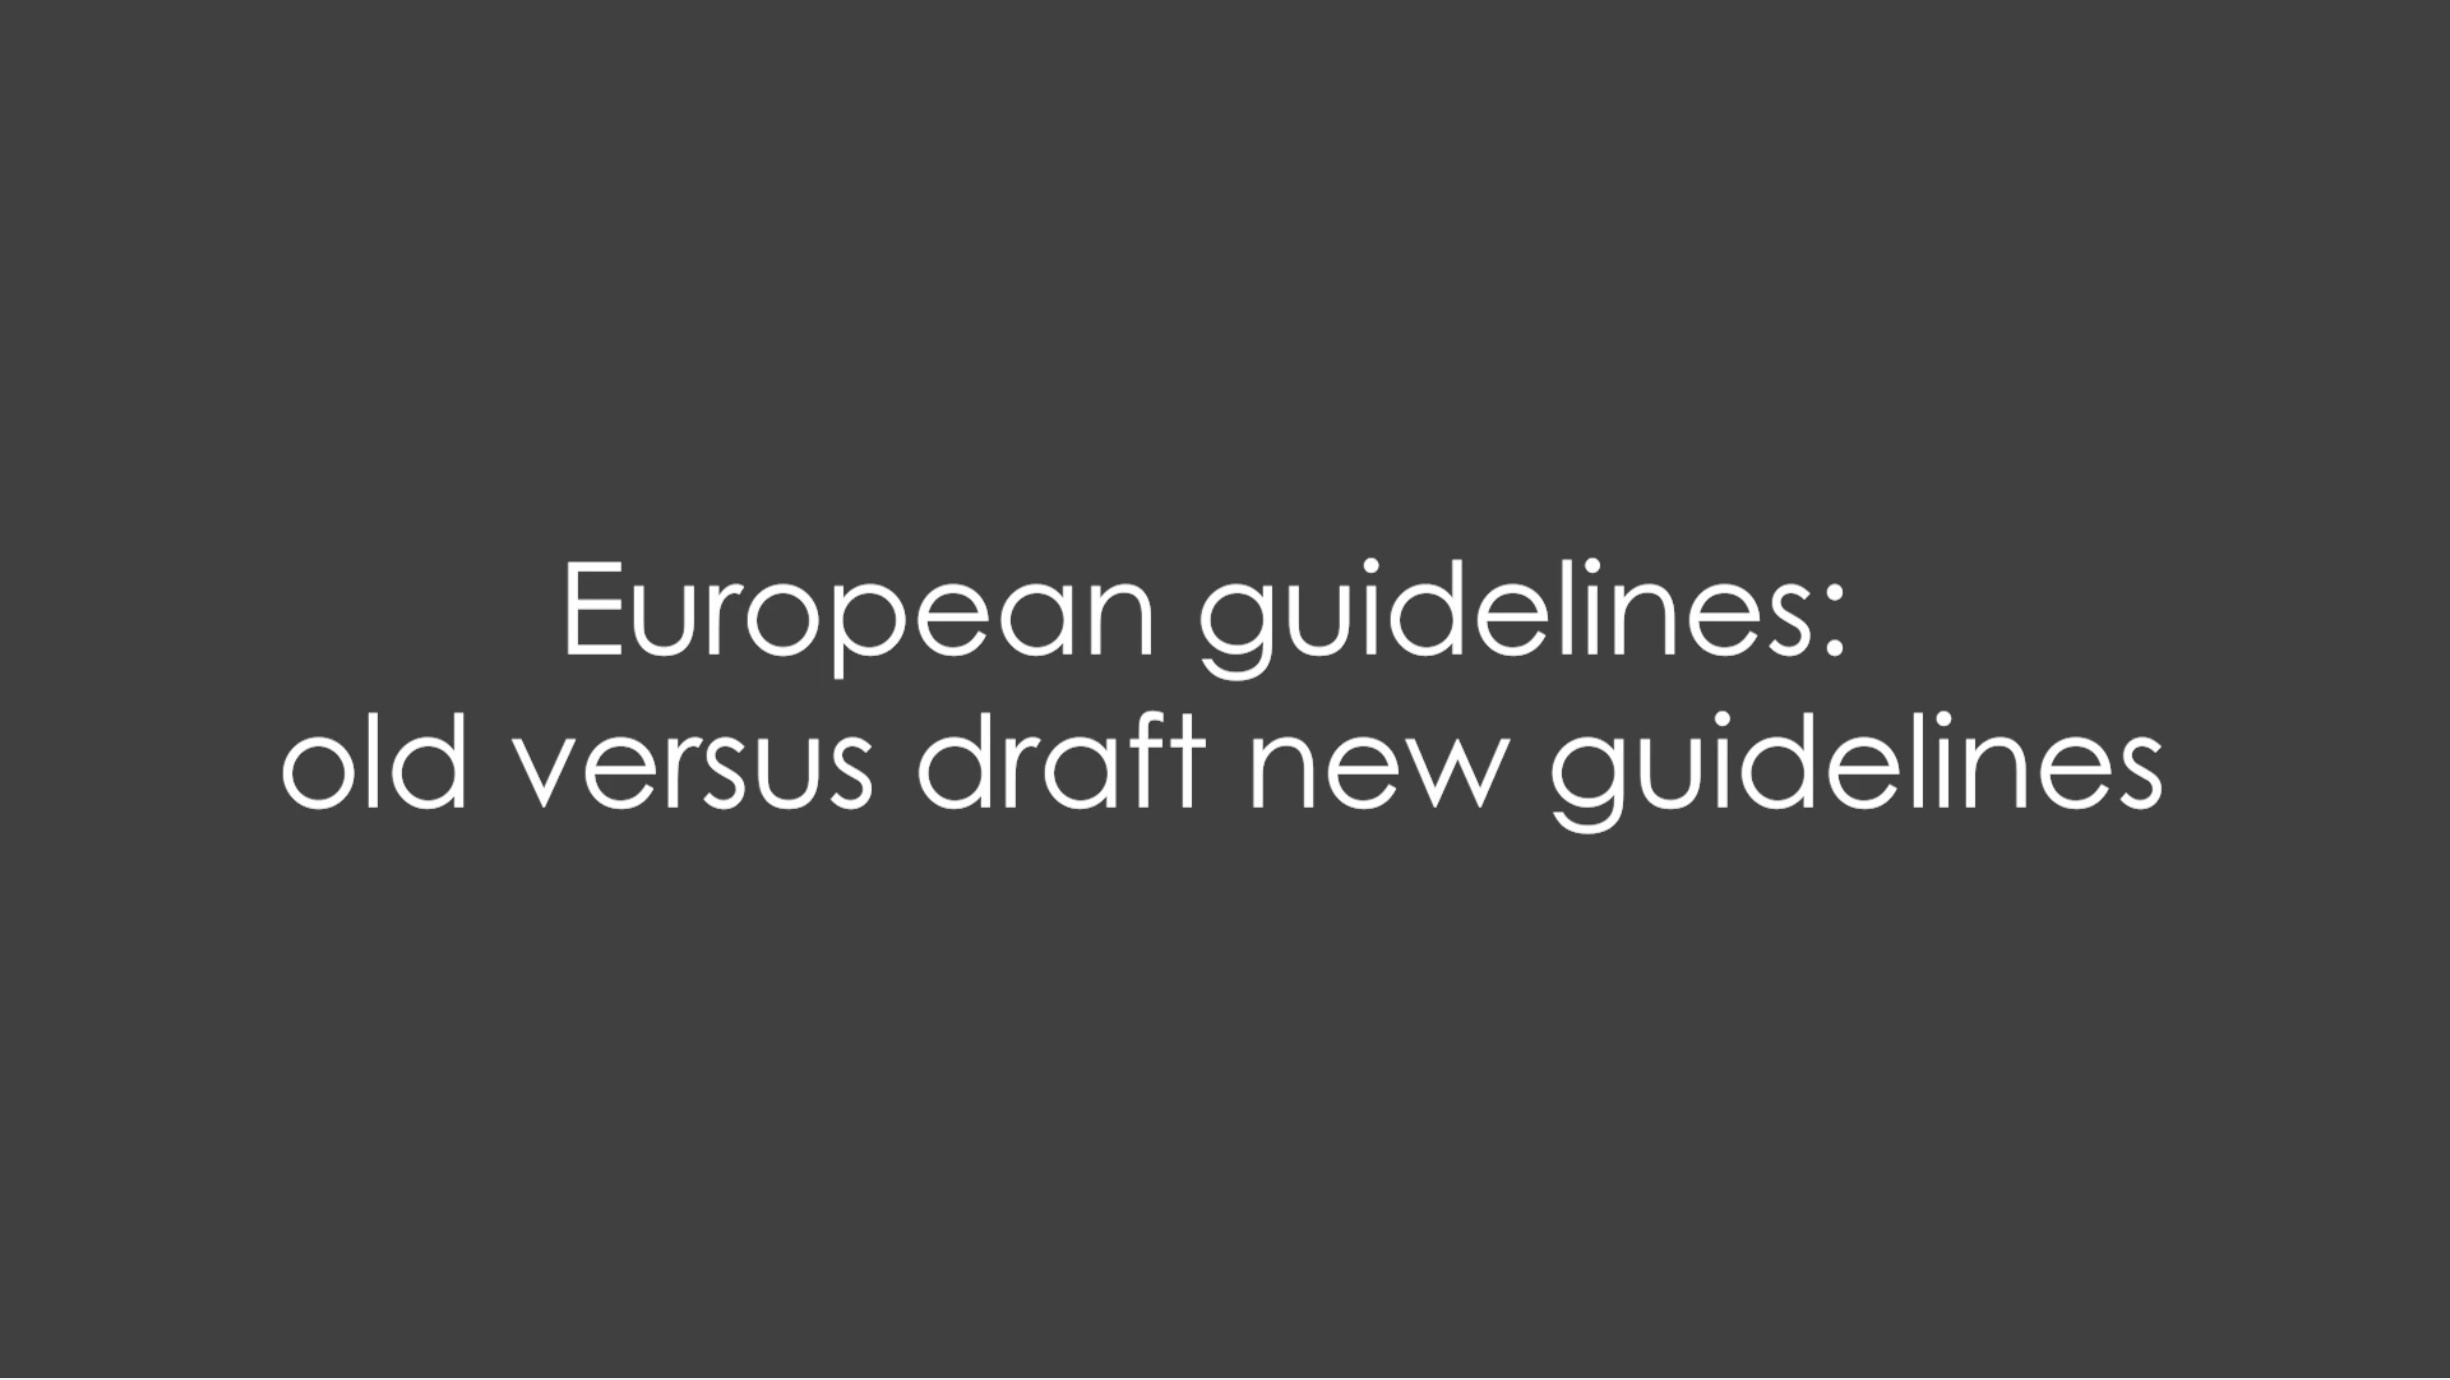 HS EADV 2022 - European guidelines old versus draft new guidelines